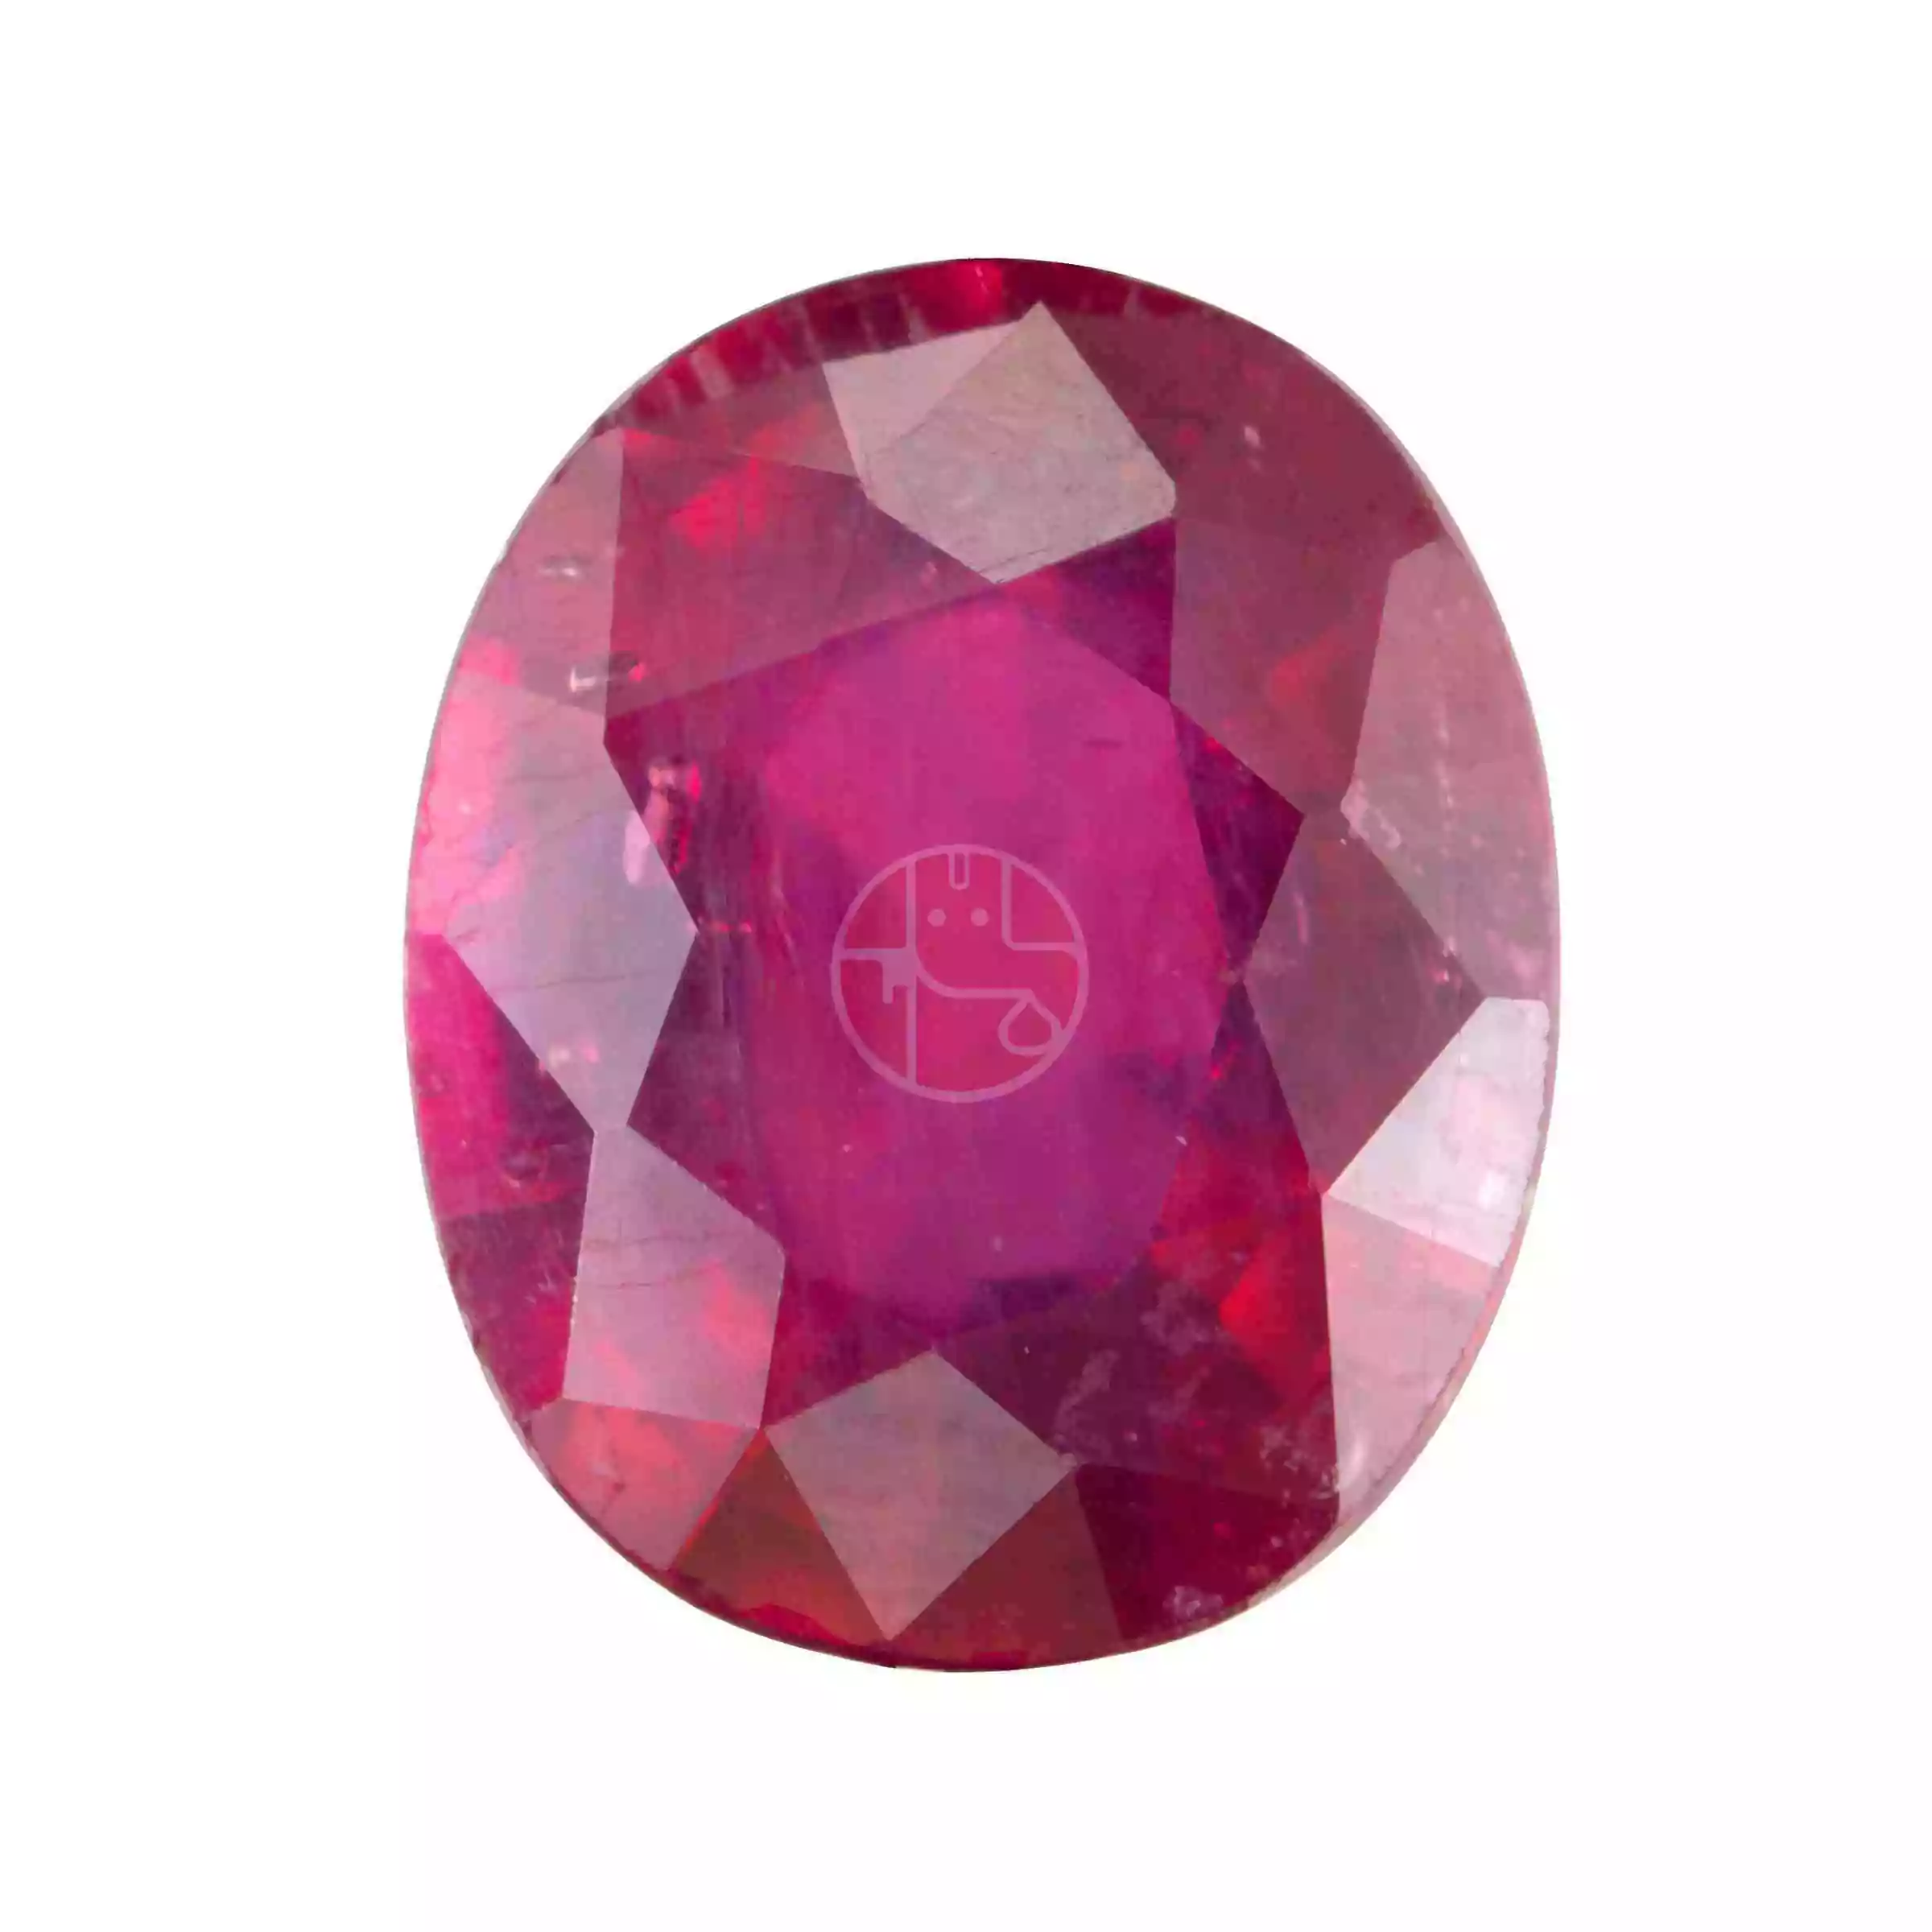 Ruby (Manik) Gemstone – 3.25